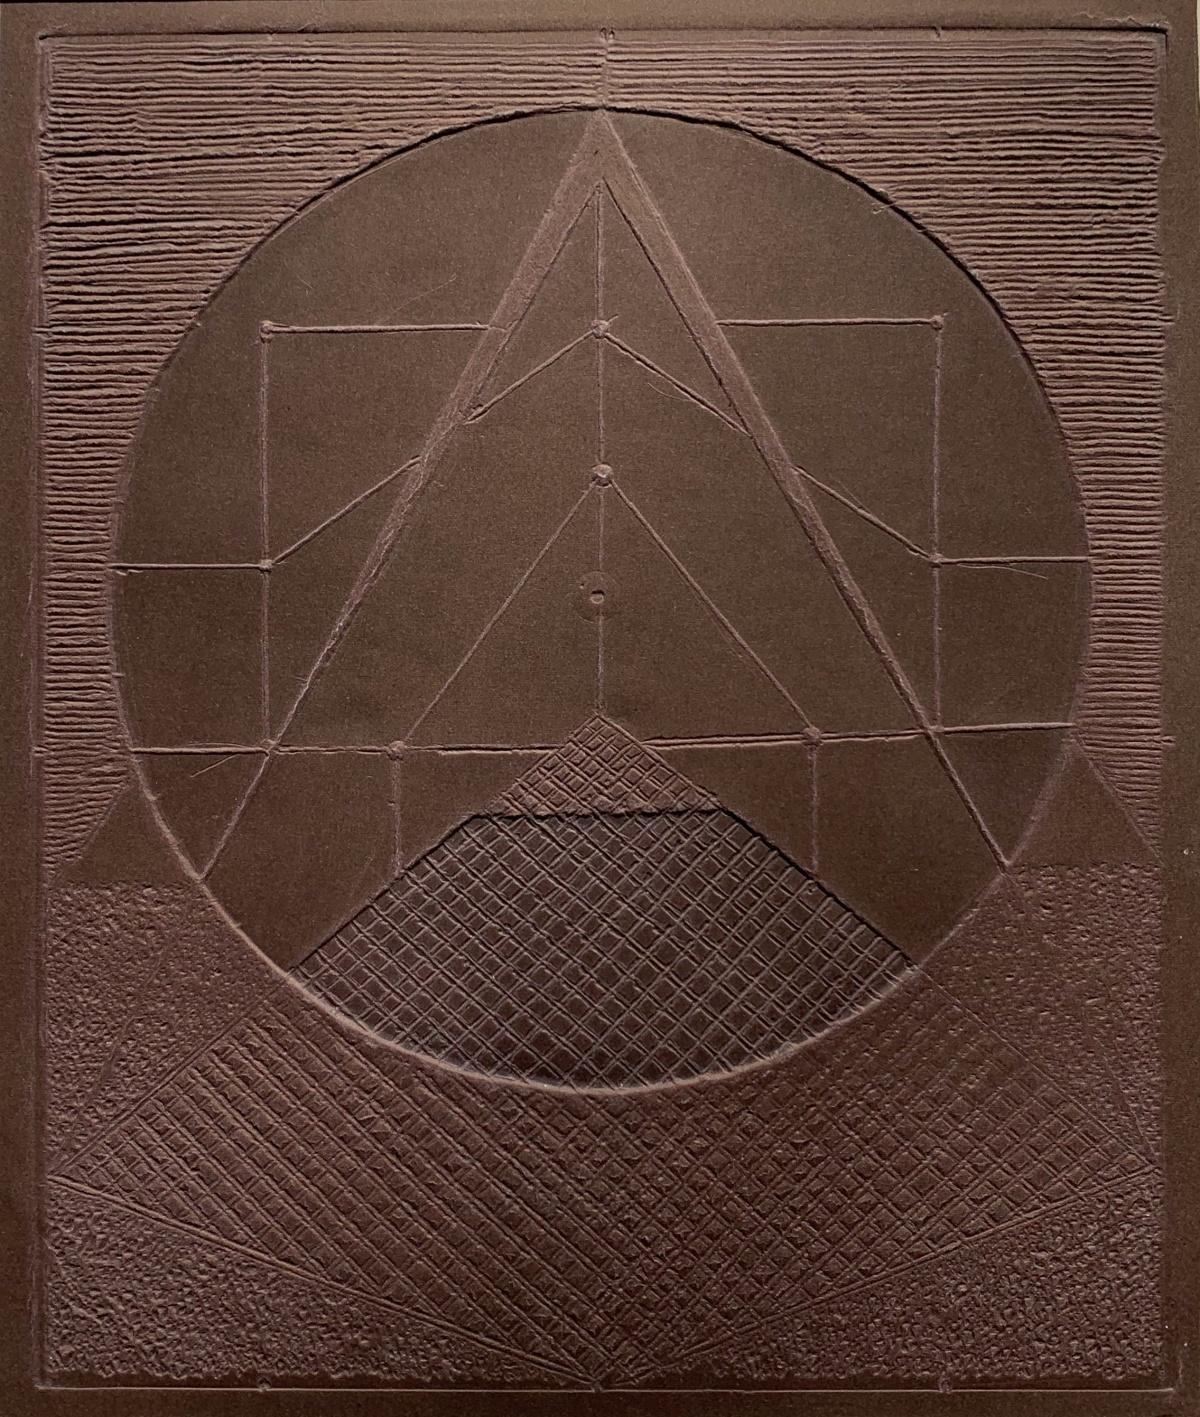 Abstract Print Ryszard Gieryszewski - Relief I - XXIe siècle, graphisme abstrait contemporain, formes géométriques, 